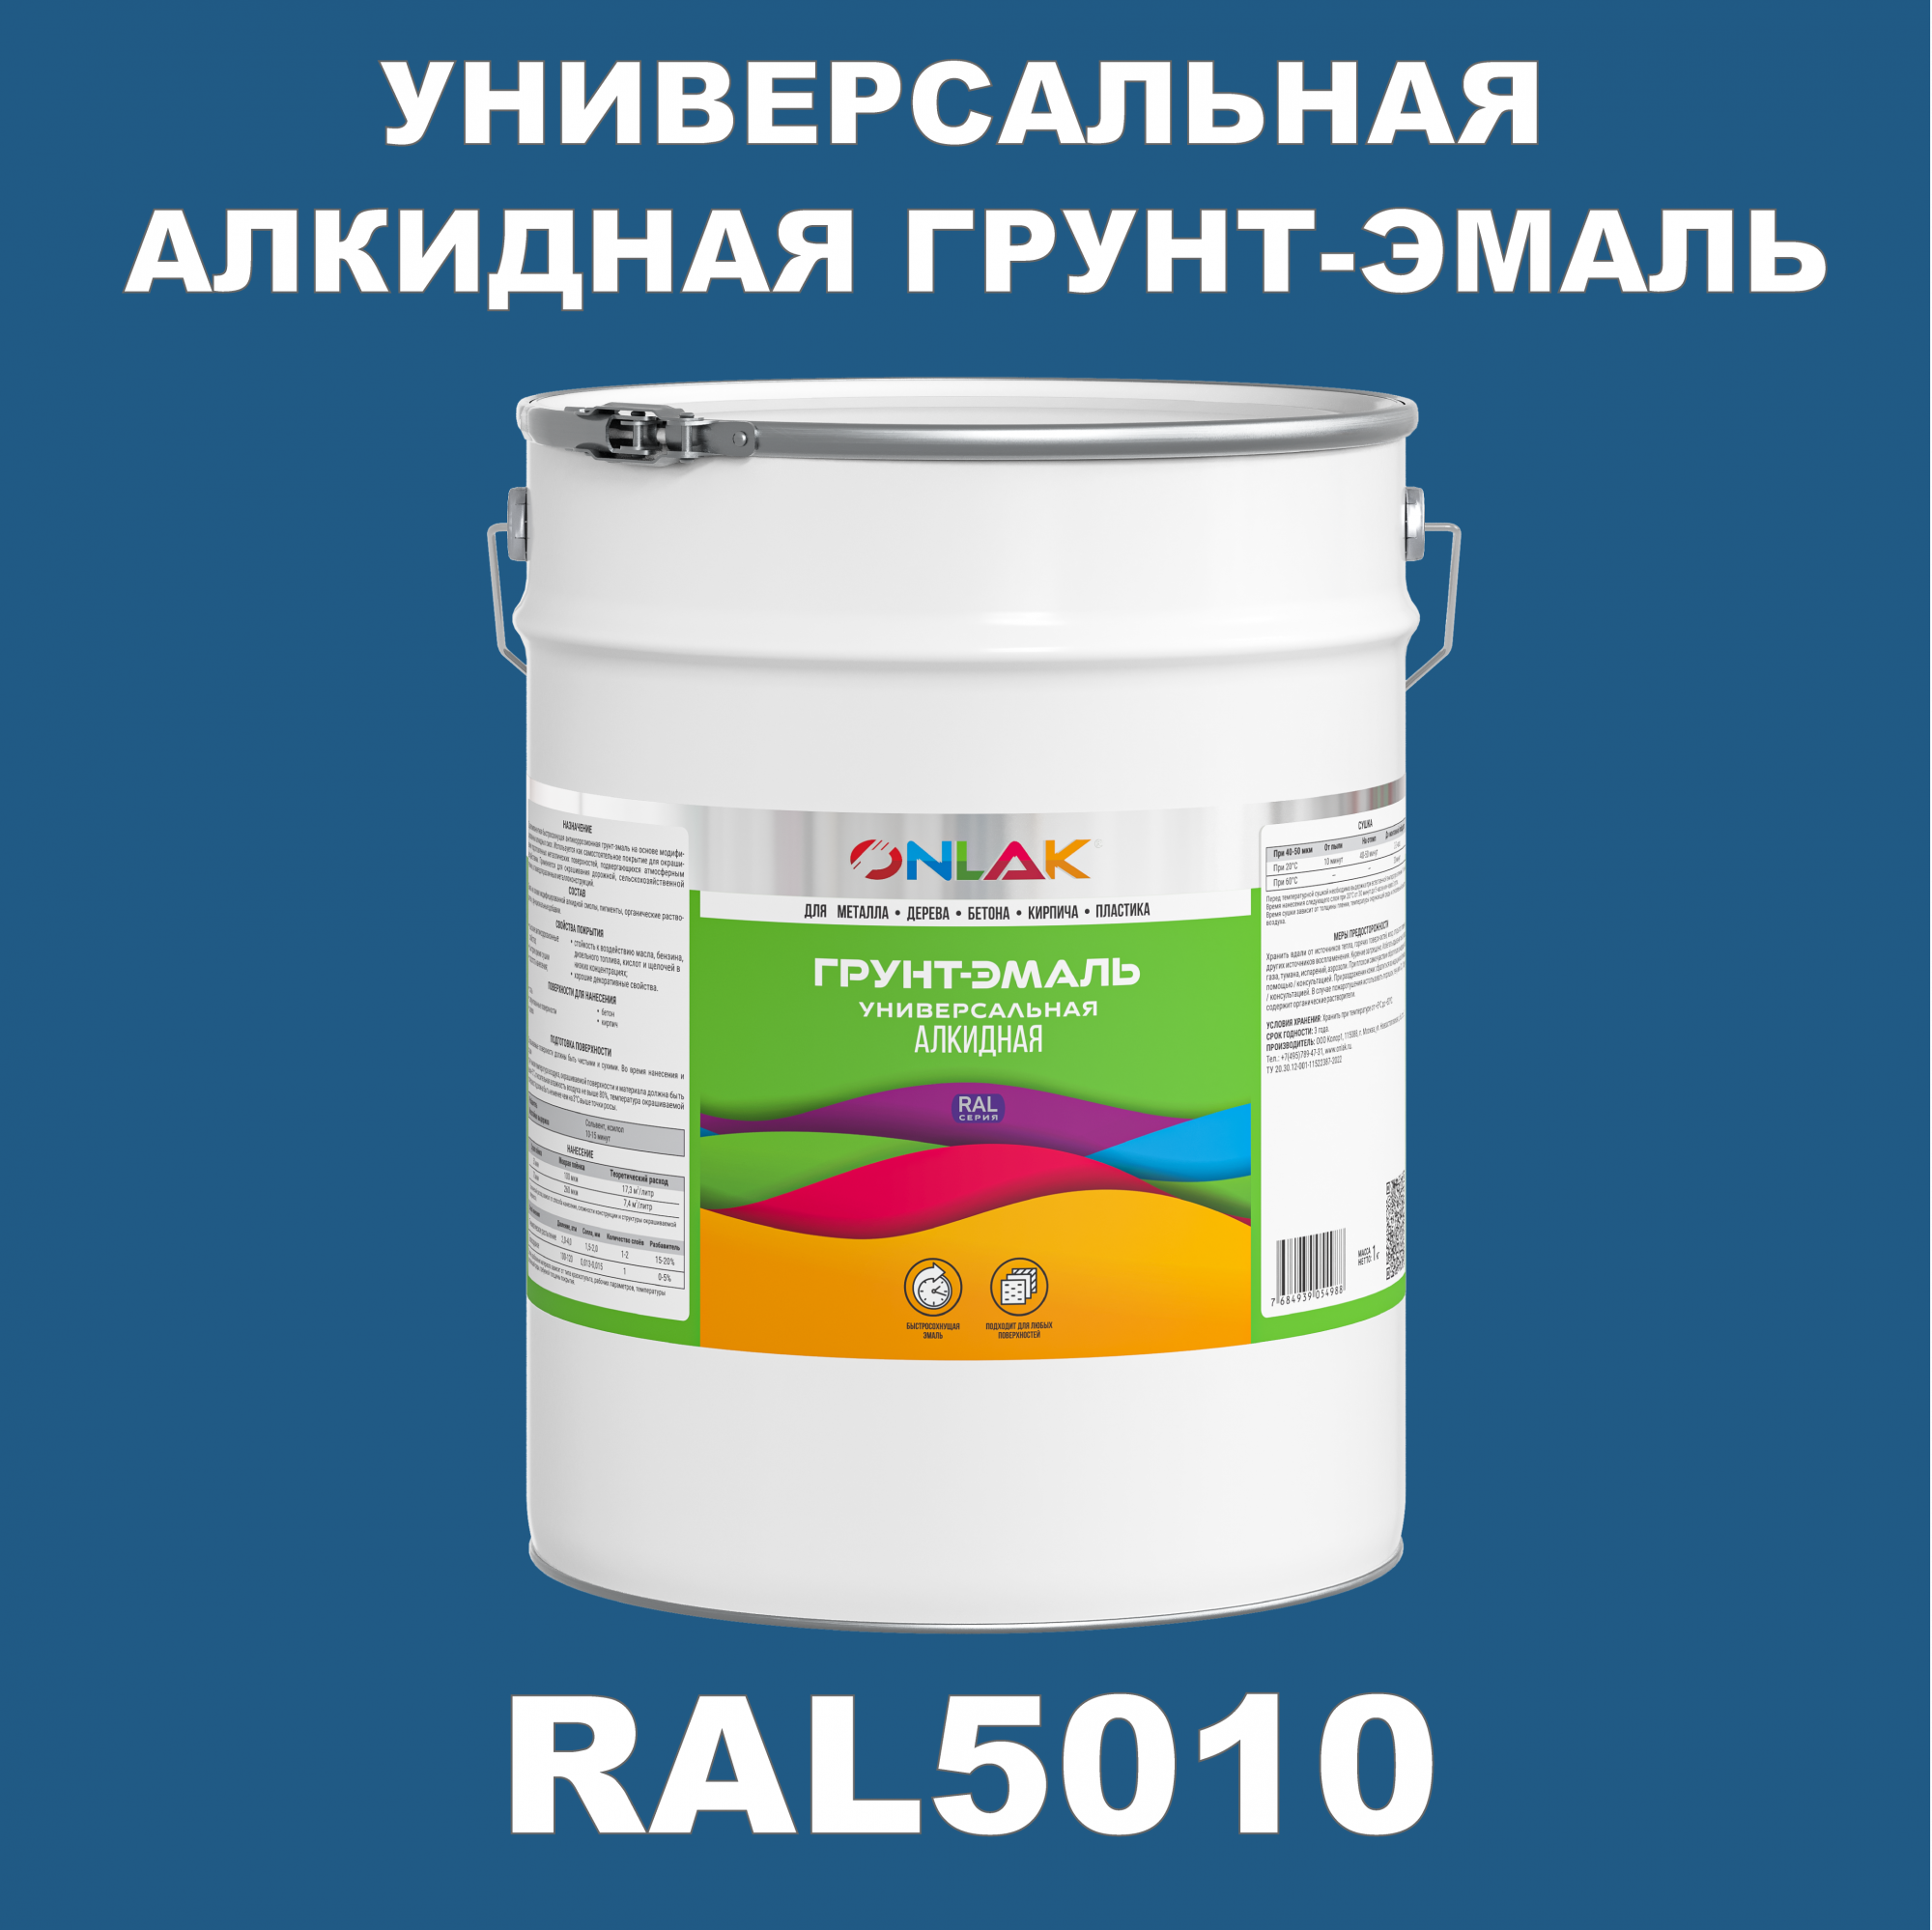 Грунт-эмаль ONLAK 1К RAL5010 антикоррозионная алкидная по металлу по ржавчине 20 кг грунт эмаль yollo по ржавчине алкидная синяя 0 9 кг